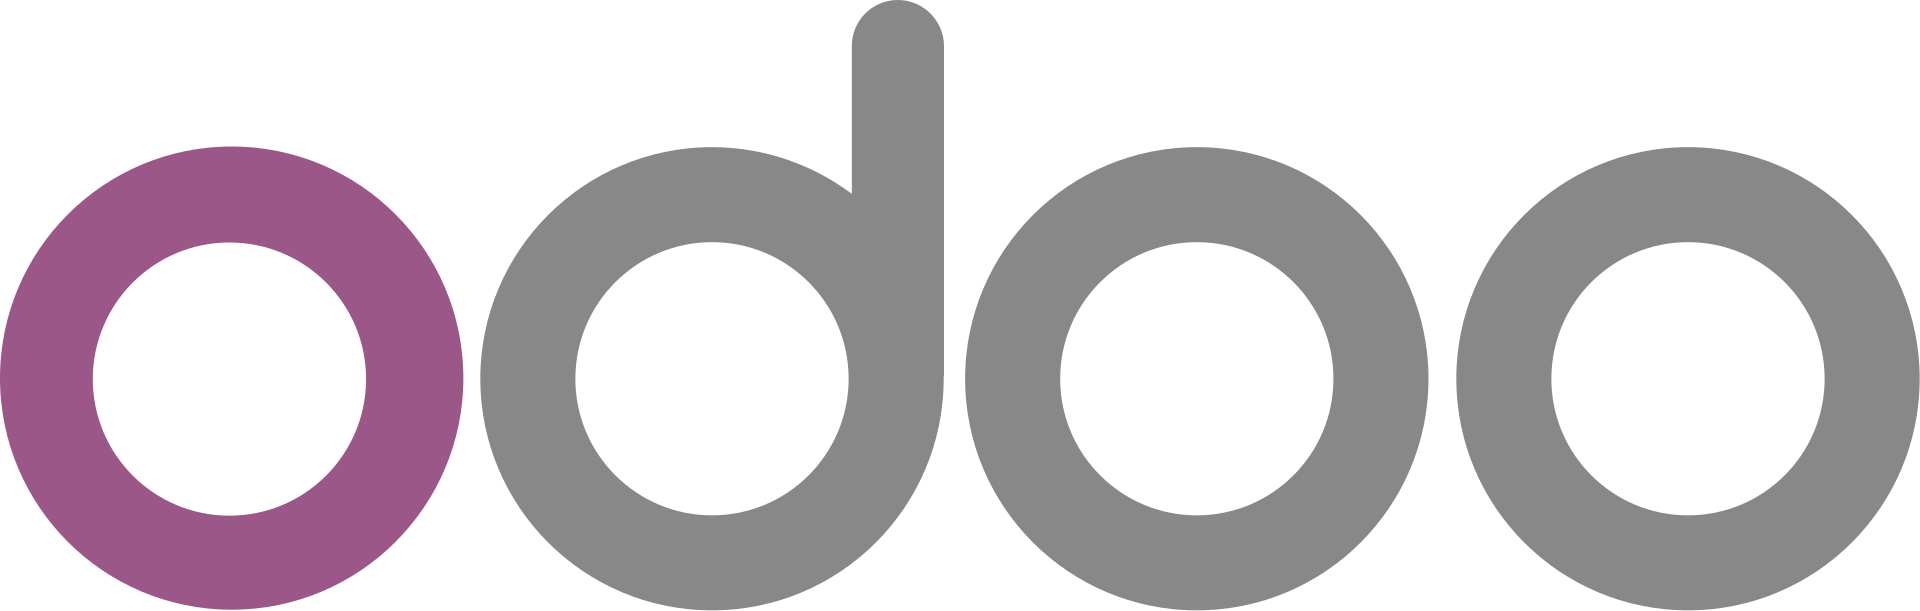 1920px-odoo-logo-svg-etisa